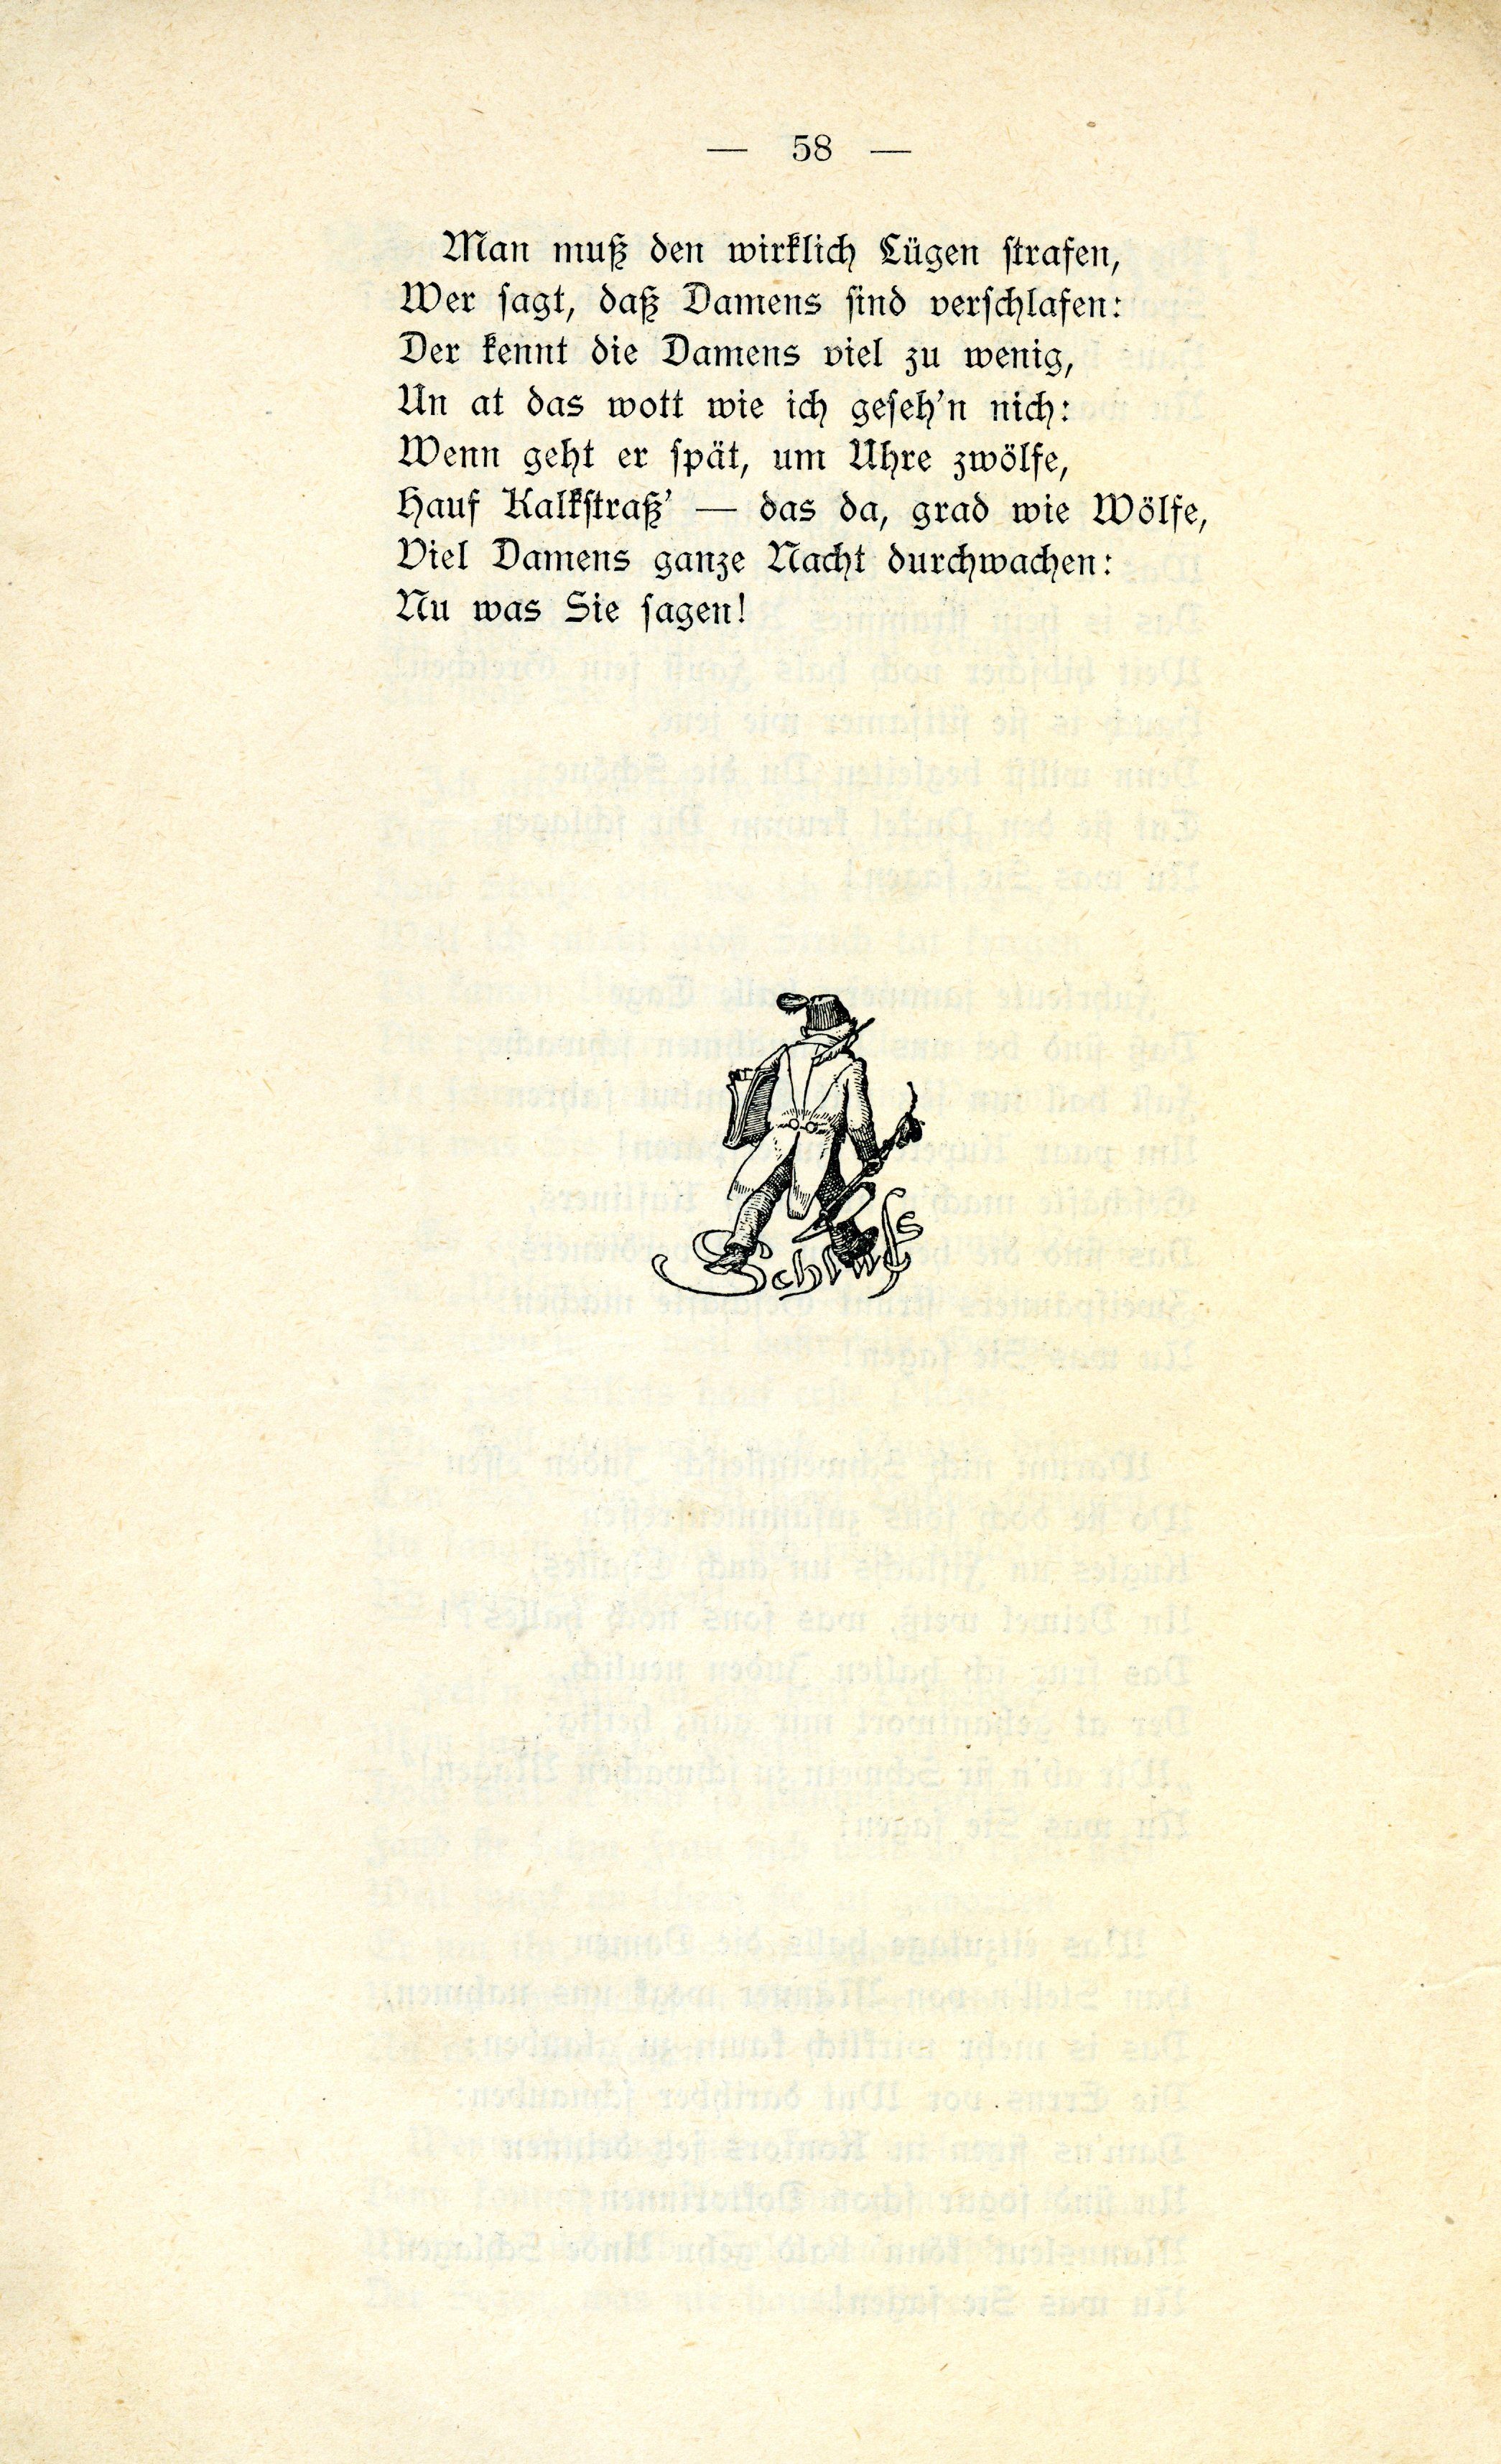 Schanno von Dünakant (1903) | 59. (58) Main body of text